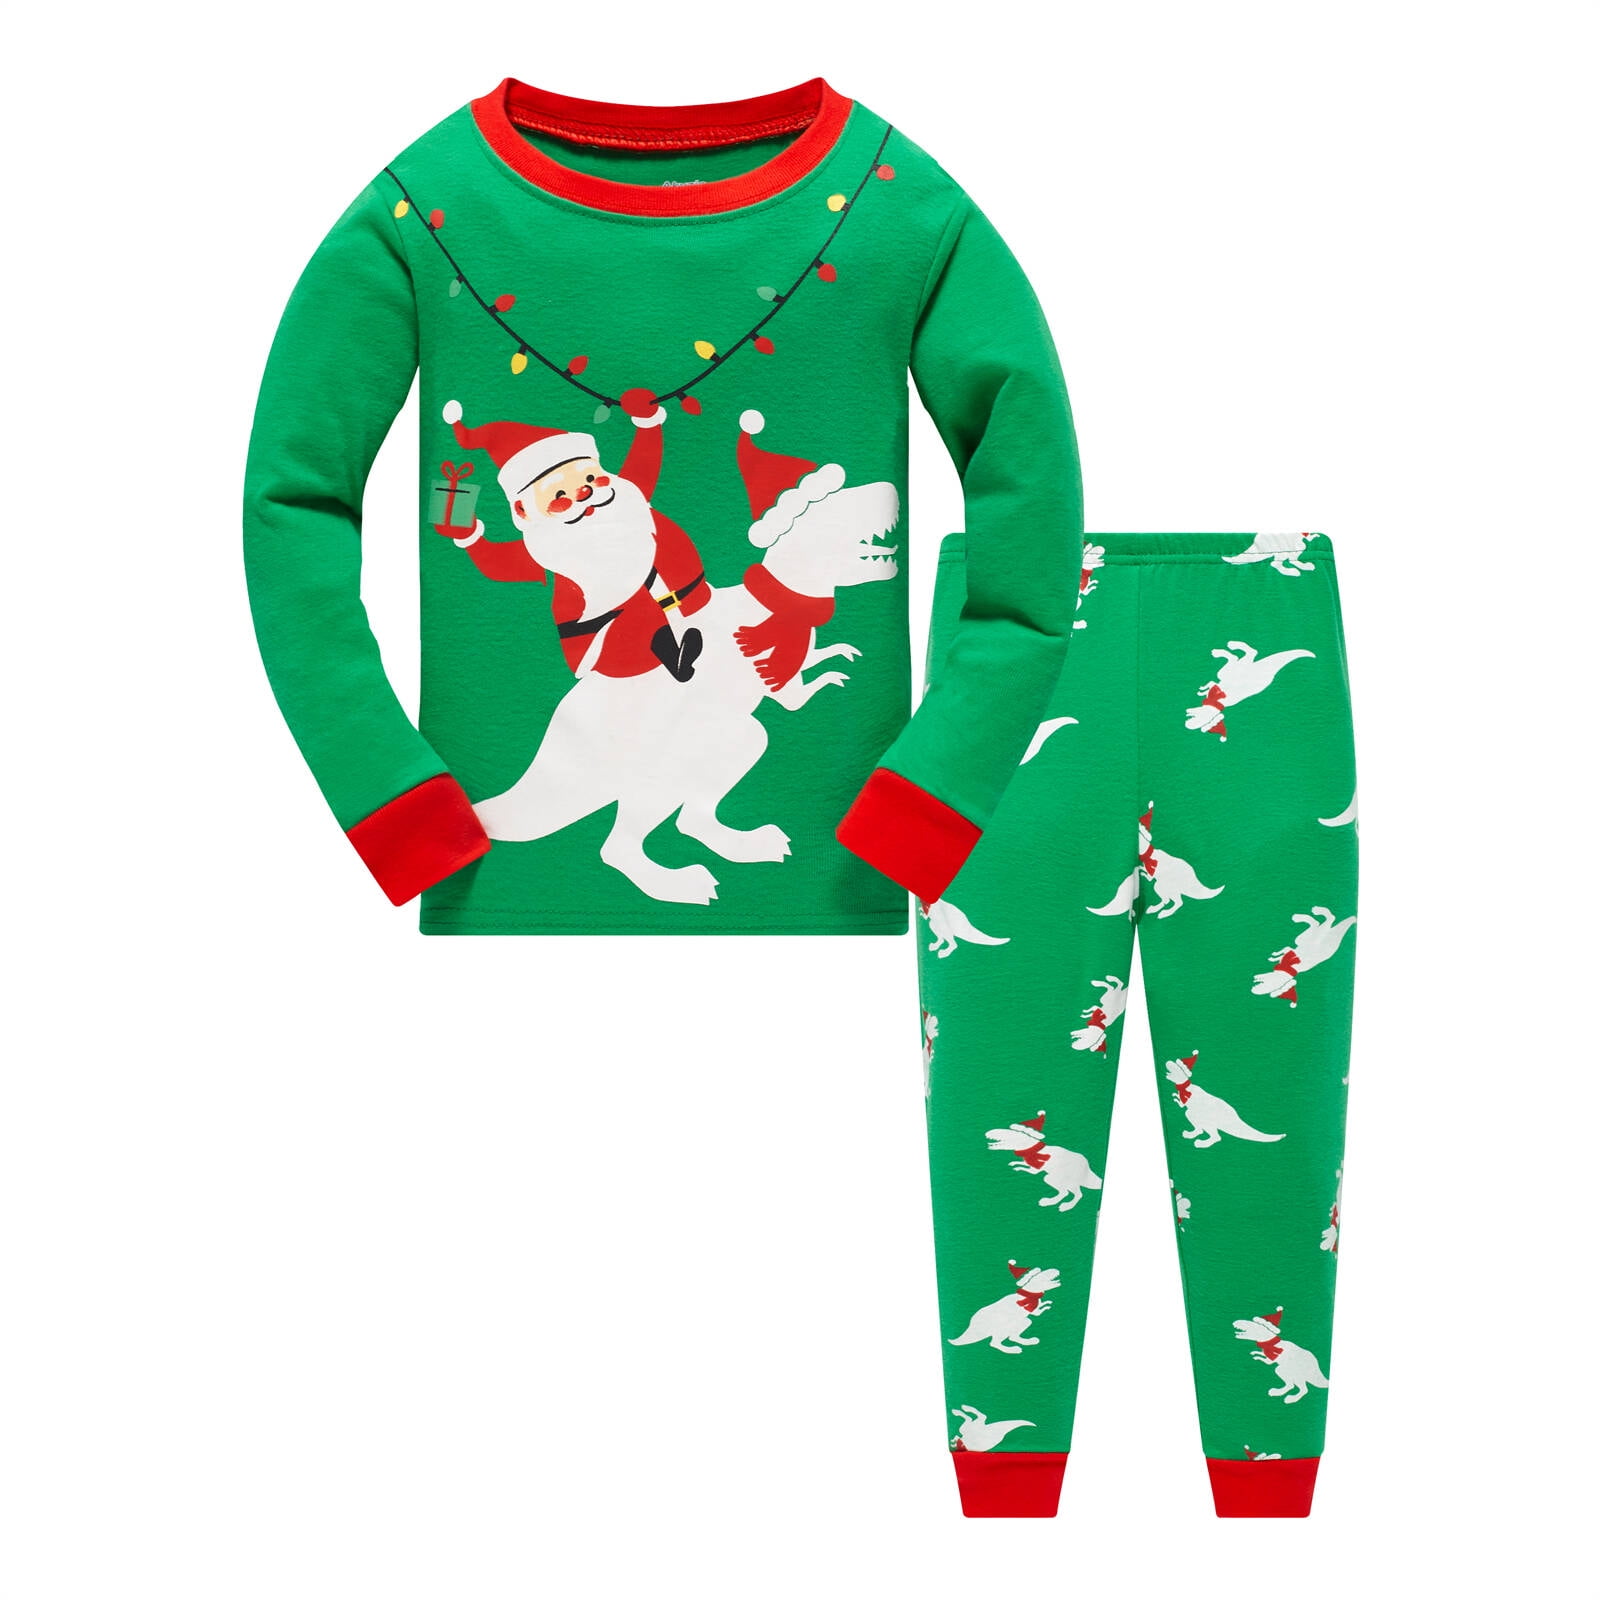 Popshion Baby Boys Christmas Pajamas Set 100% Cotton Xmas Sleepwear ...